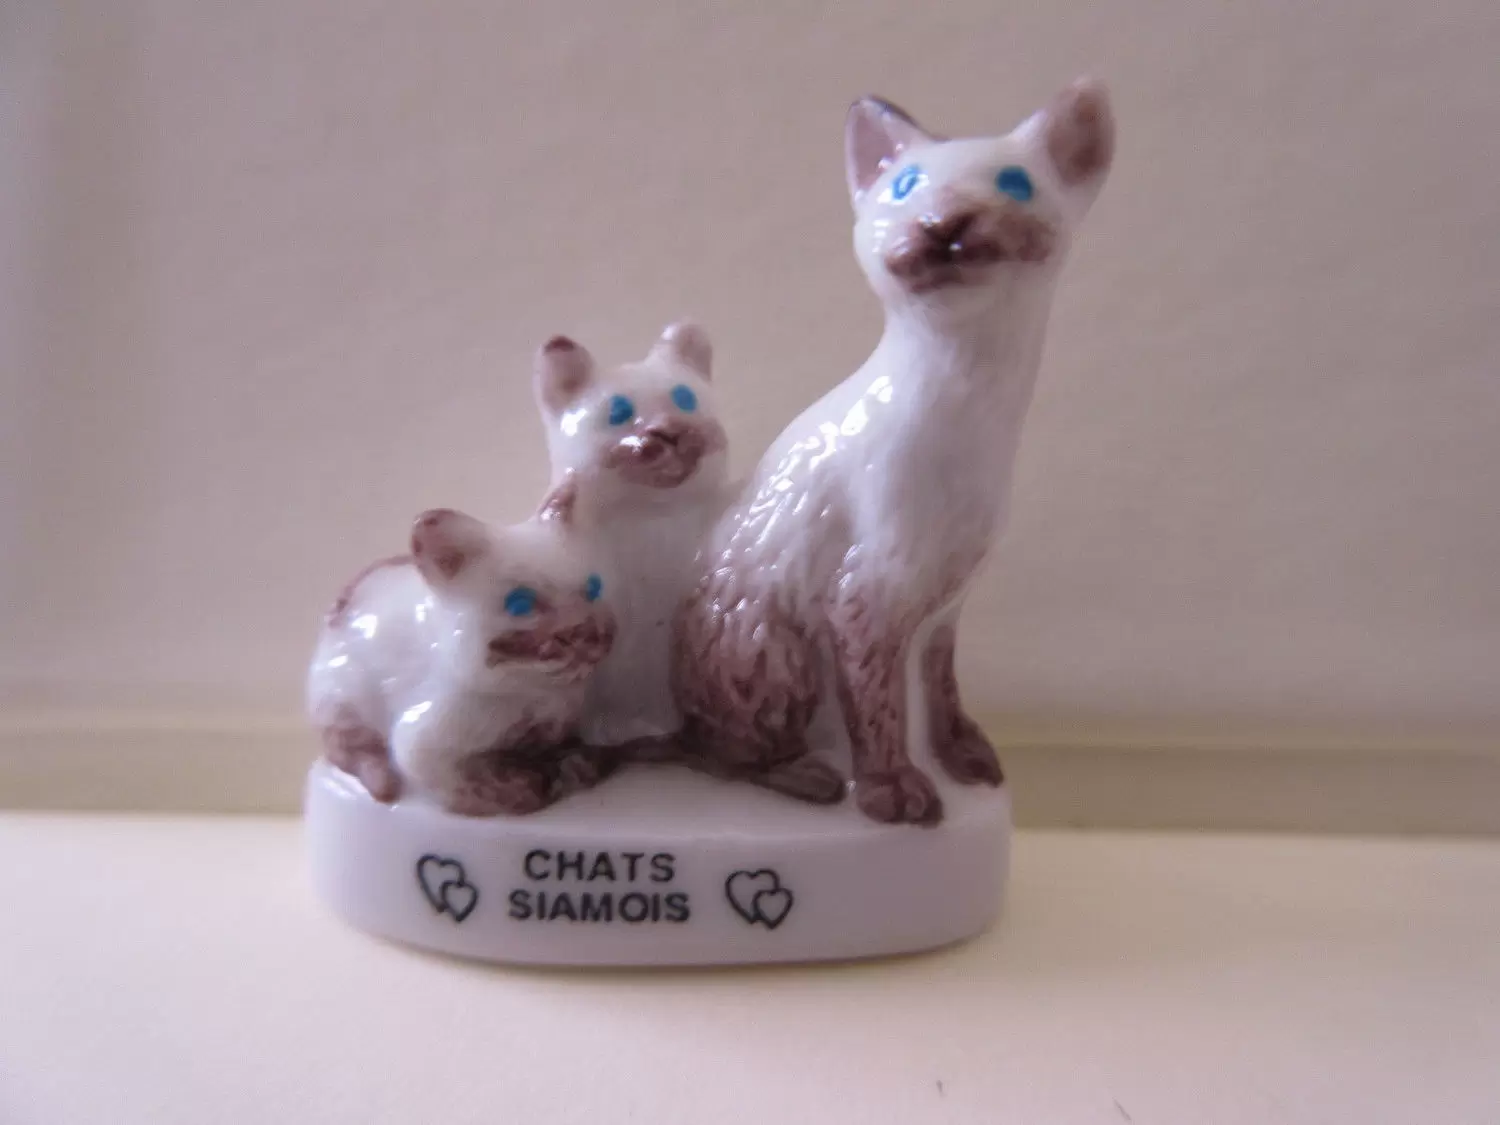 Fèves - Les Chats de Calins - Chats Siamois